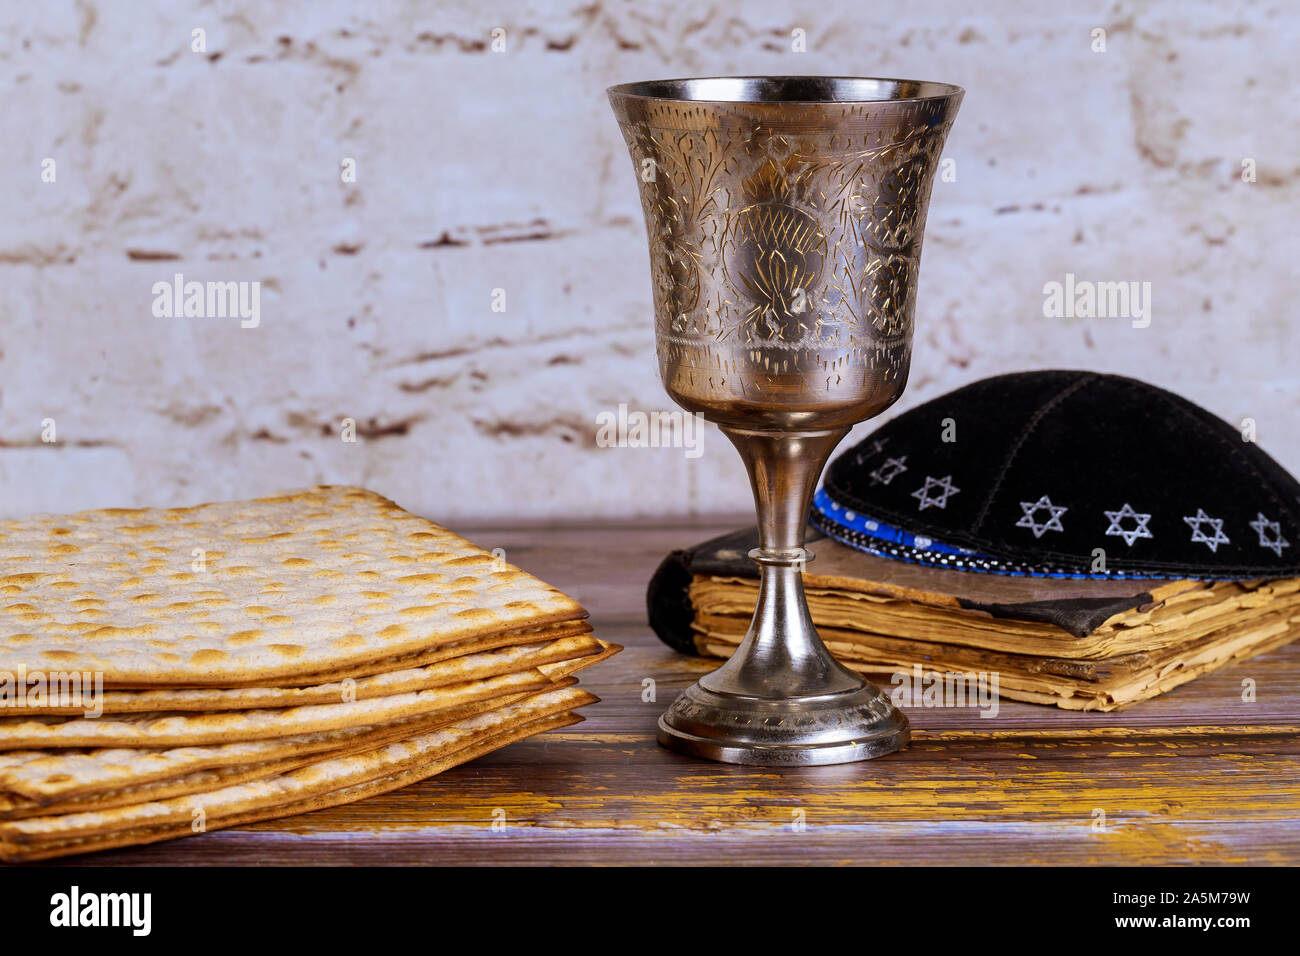 holiday jewish passover bread matzoh wine celebration and kipah Stock Photo